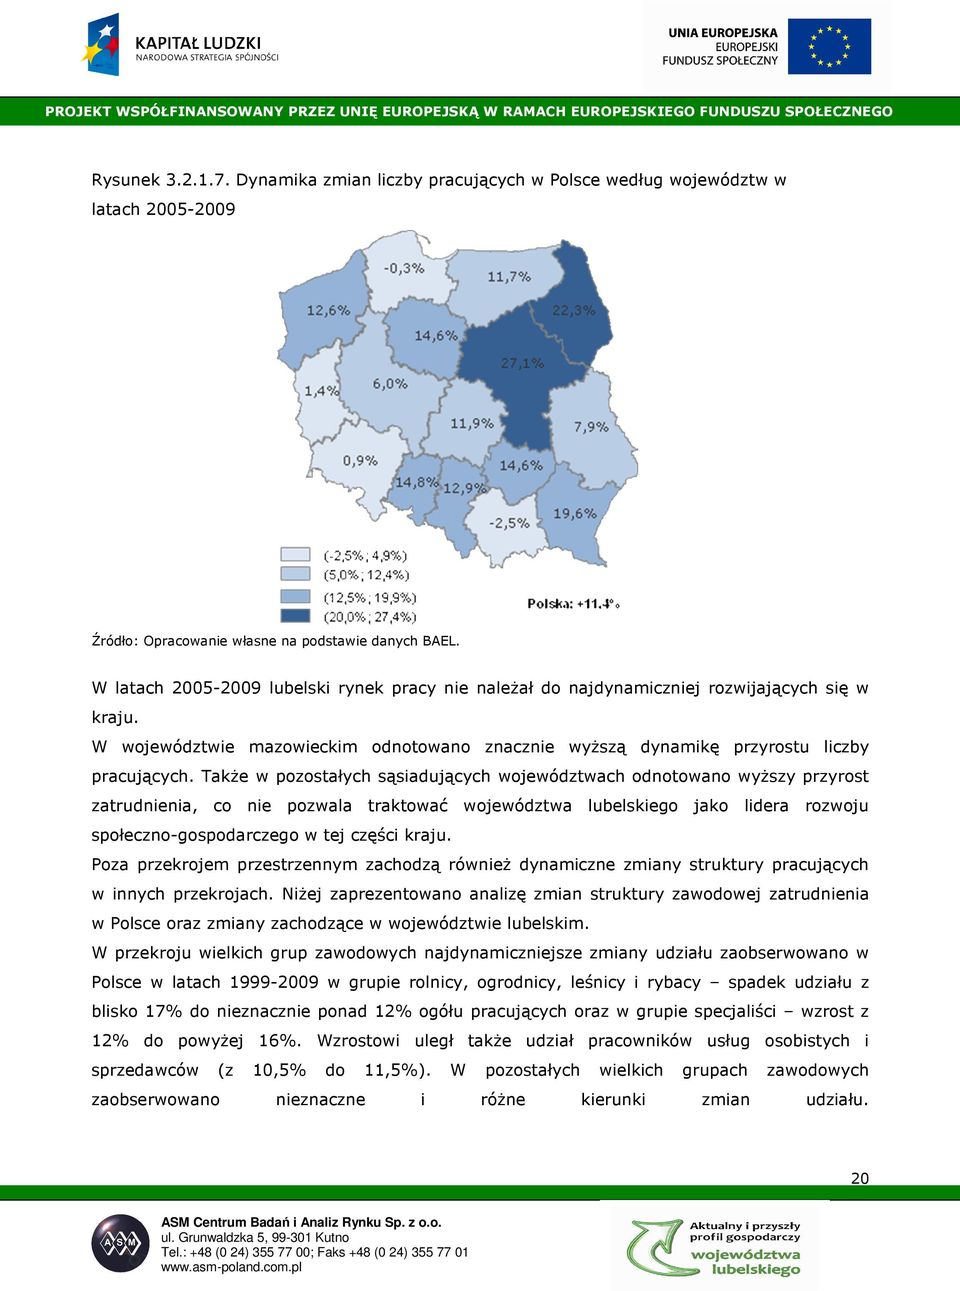 TakŜe w pozostałych sąsiadujących województwach odnotowano wyŝszy przyrost zatrudnienia, co nie pozwala traktować województwa lubelskiego jako lidera rozwoju społeczno-gospodarczego w tej części